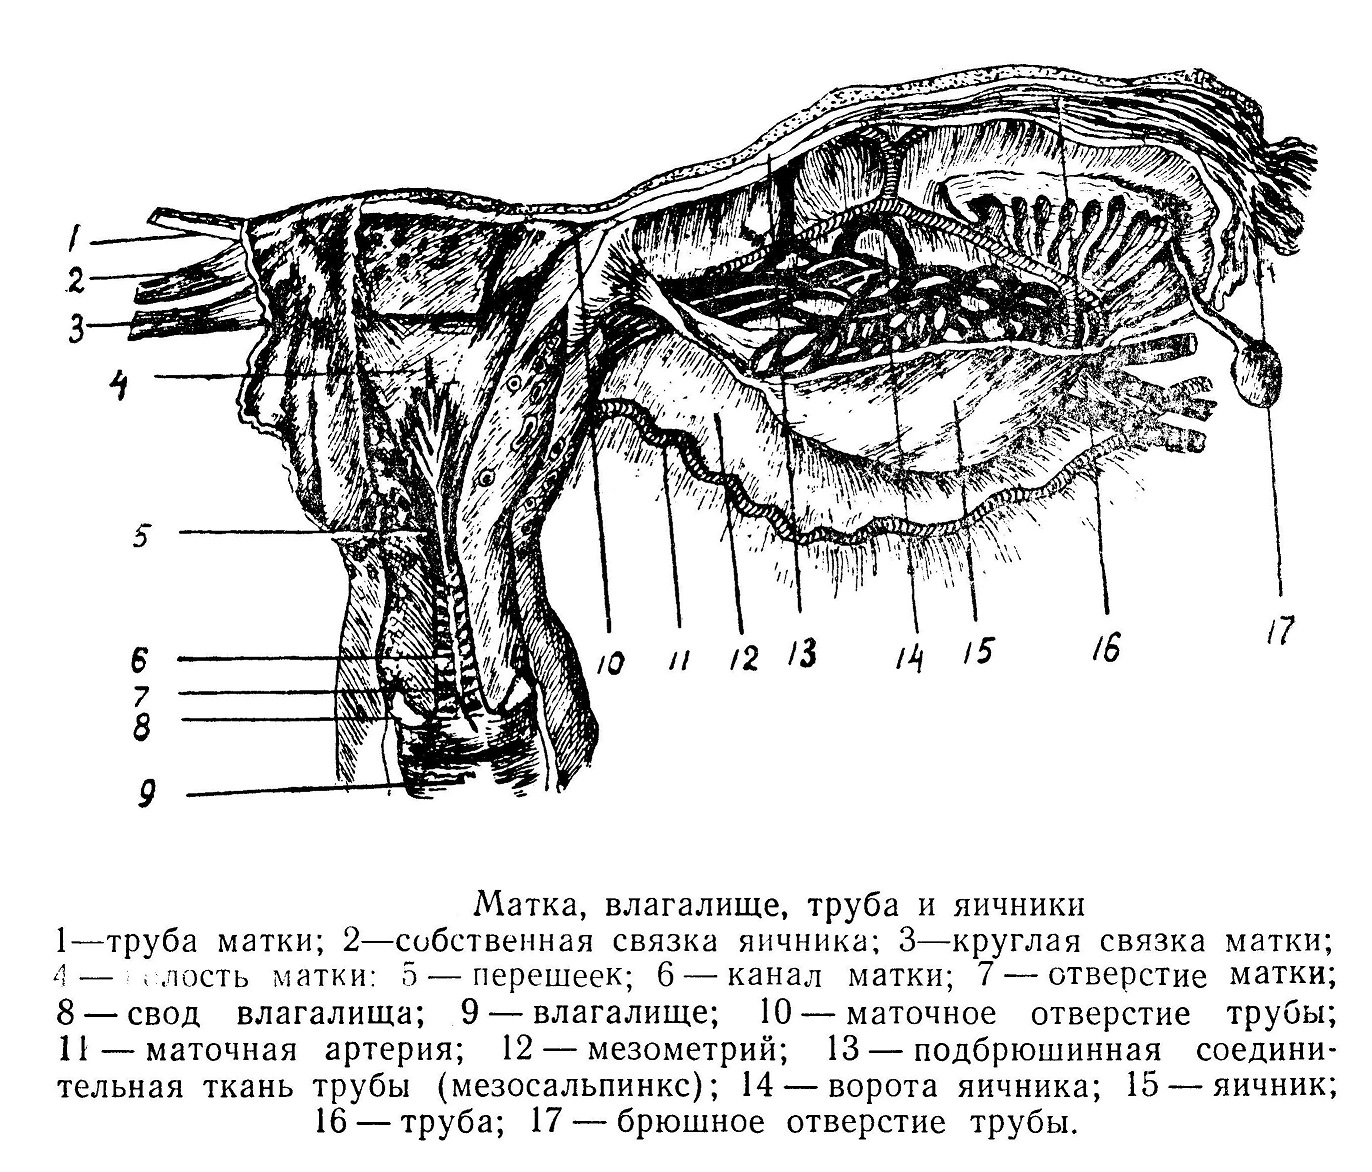 Матка анатомия топография